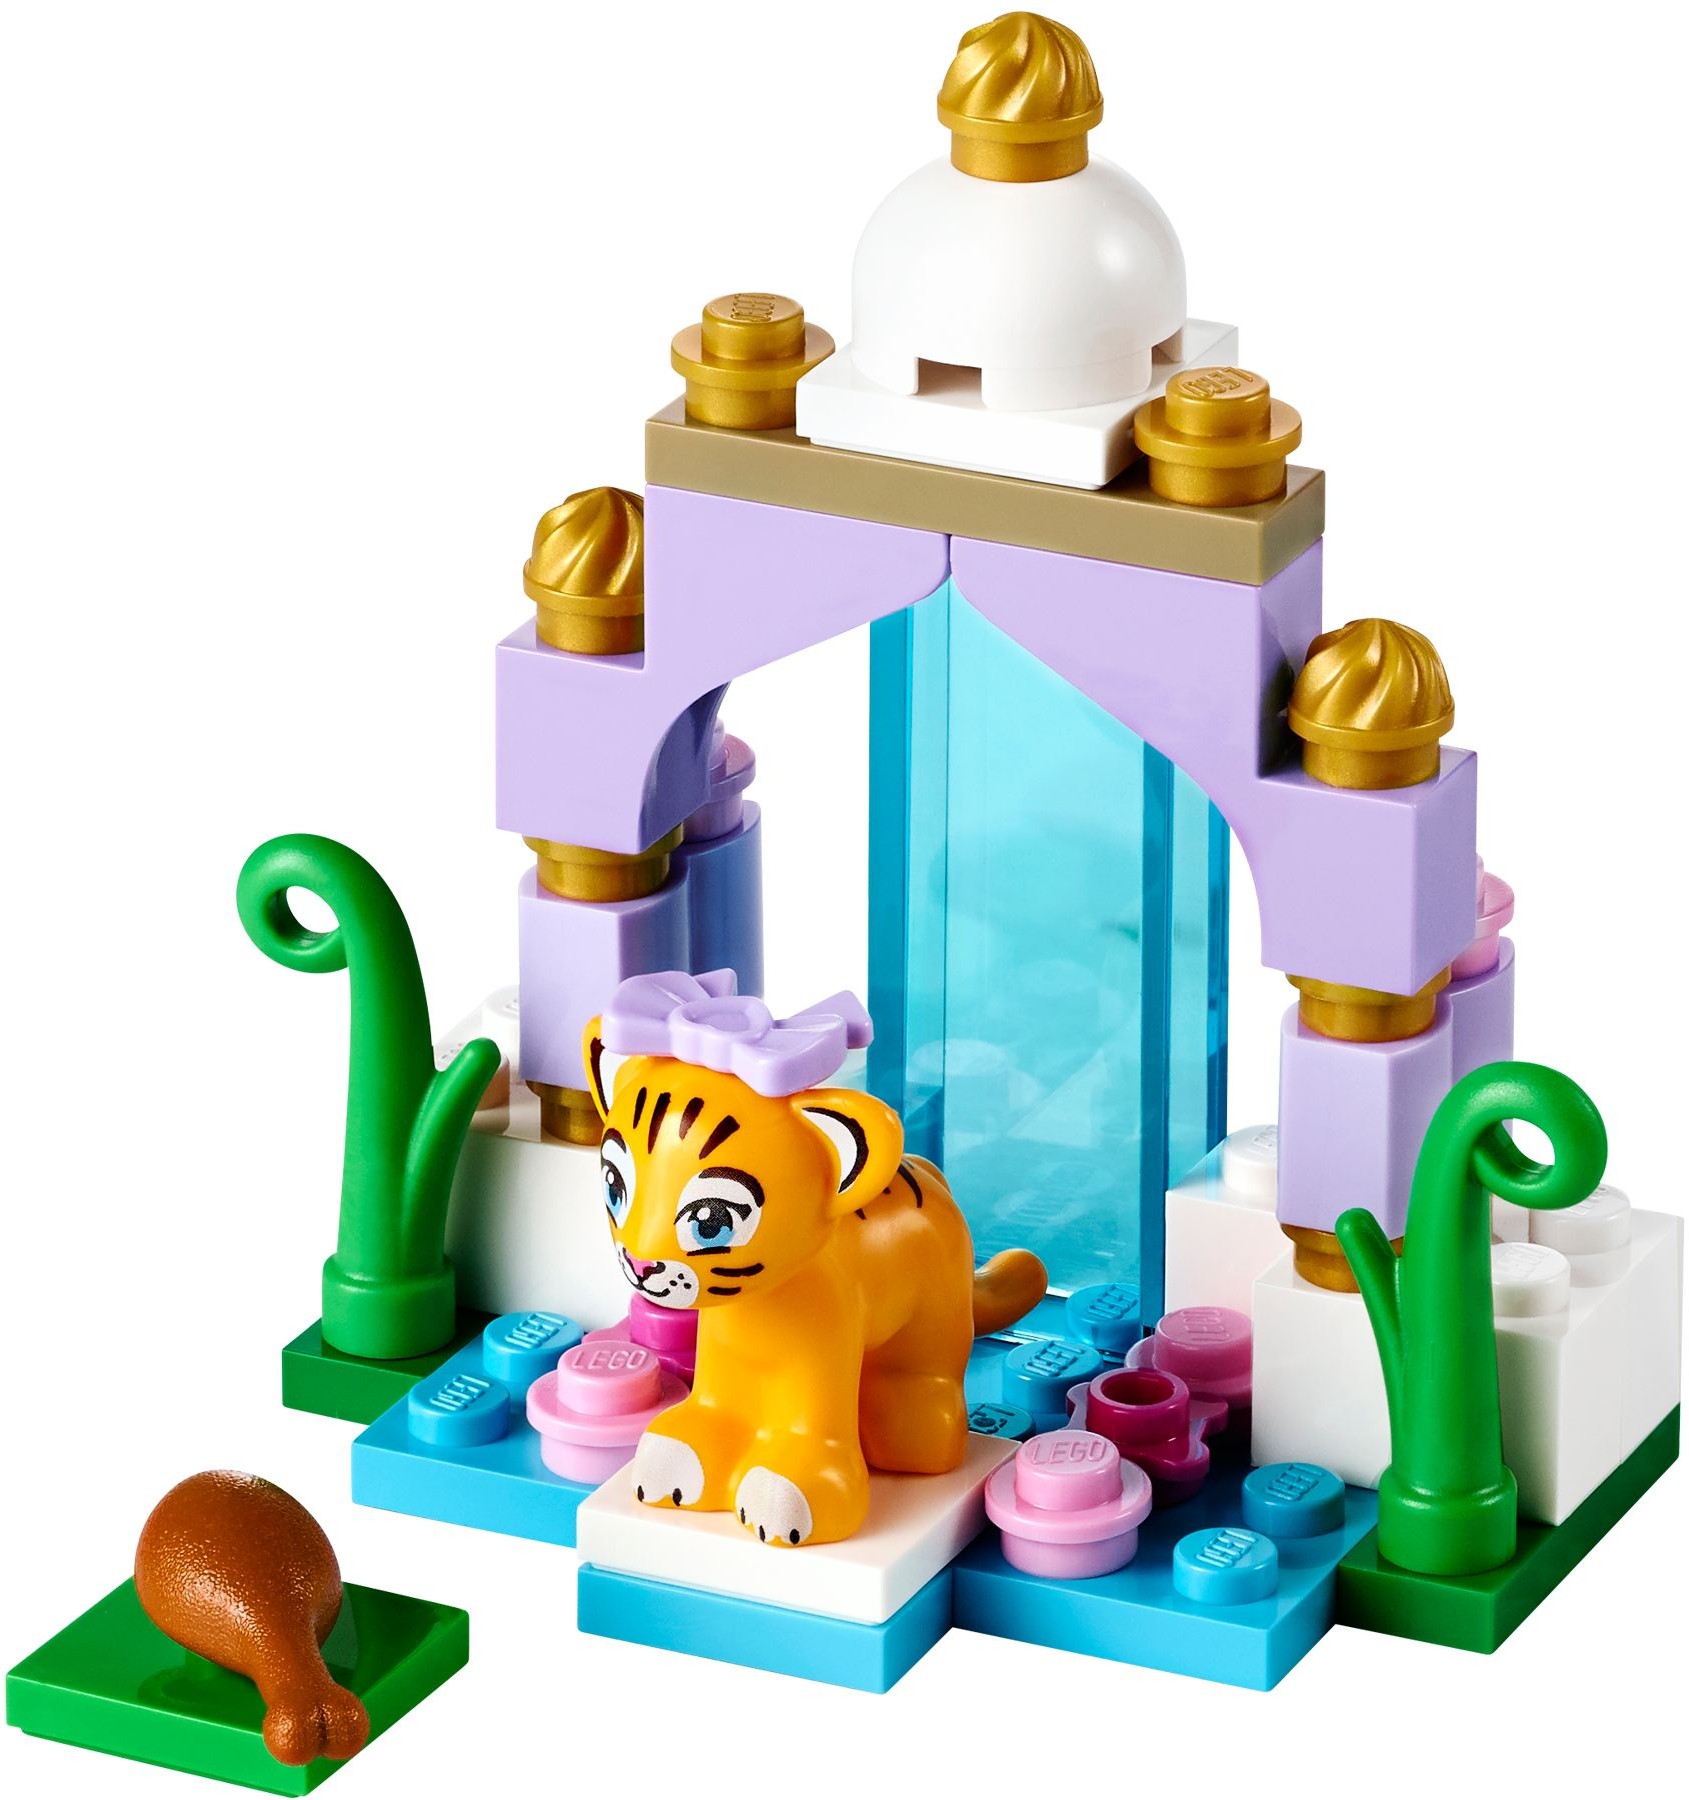 2014-41038 LEGO FRIENDS ANIMALS BESTPRICE 1 x CHAMELEON FIGURE NEW 